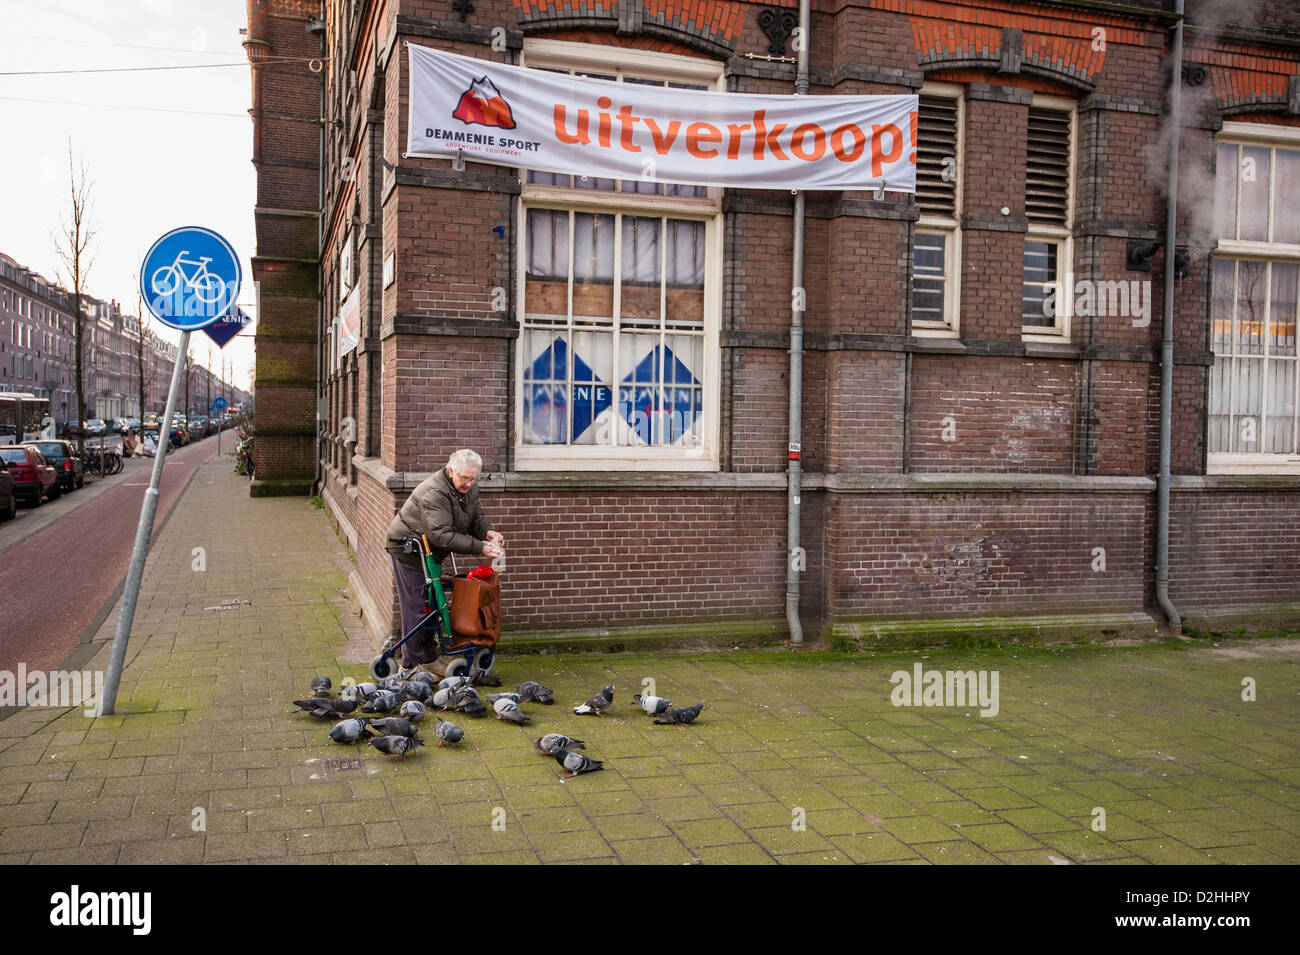 Niederlande, Amsterdam, de Jordaan Vertrieb von Demmenie und alte Dame ist die Tauben füttern. Foto Kees Metselaar Stockfoto